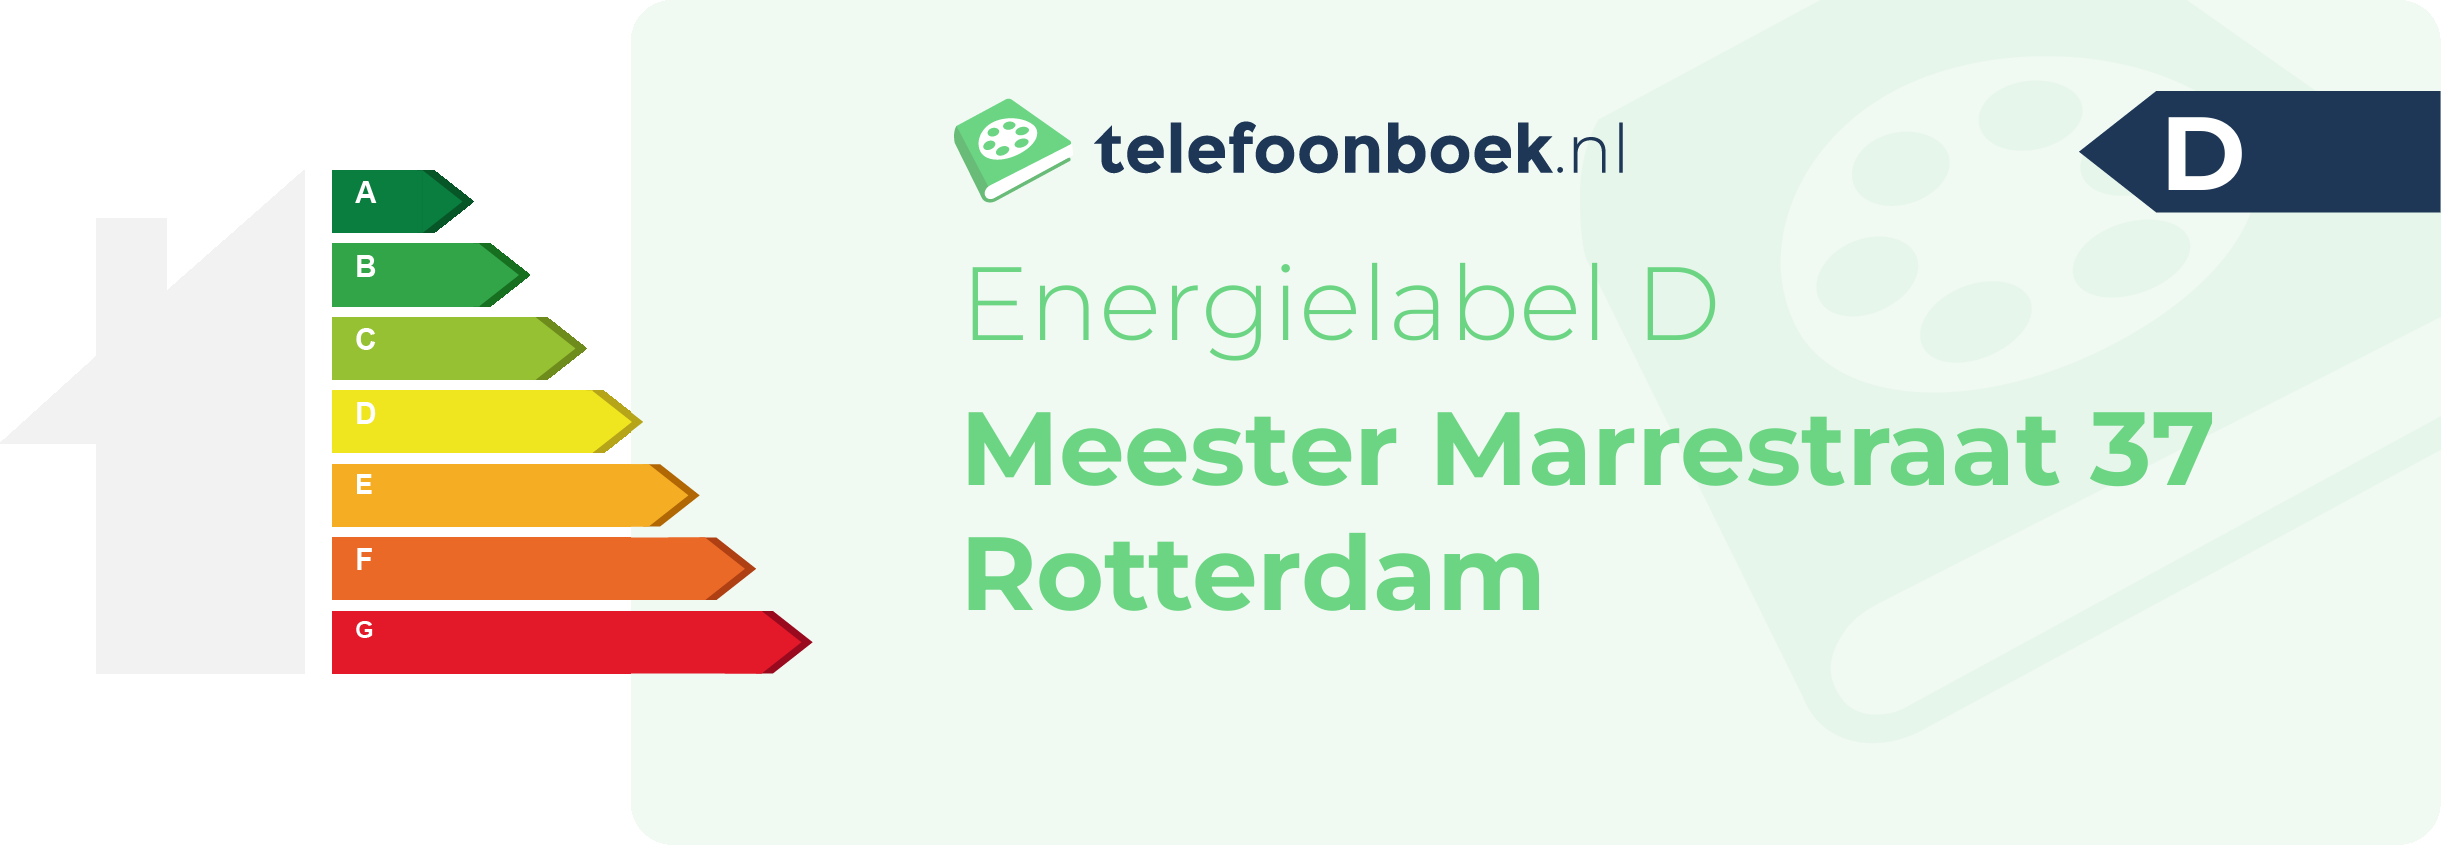 Energielabel Meester Marrestraat 37 Rotterdam